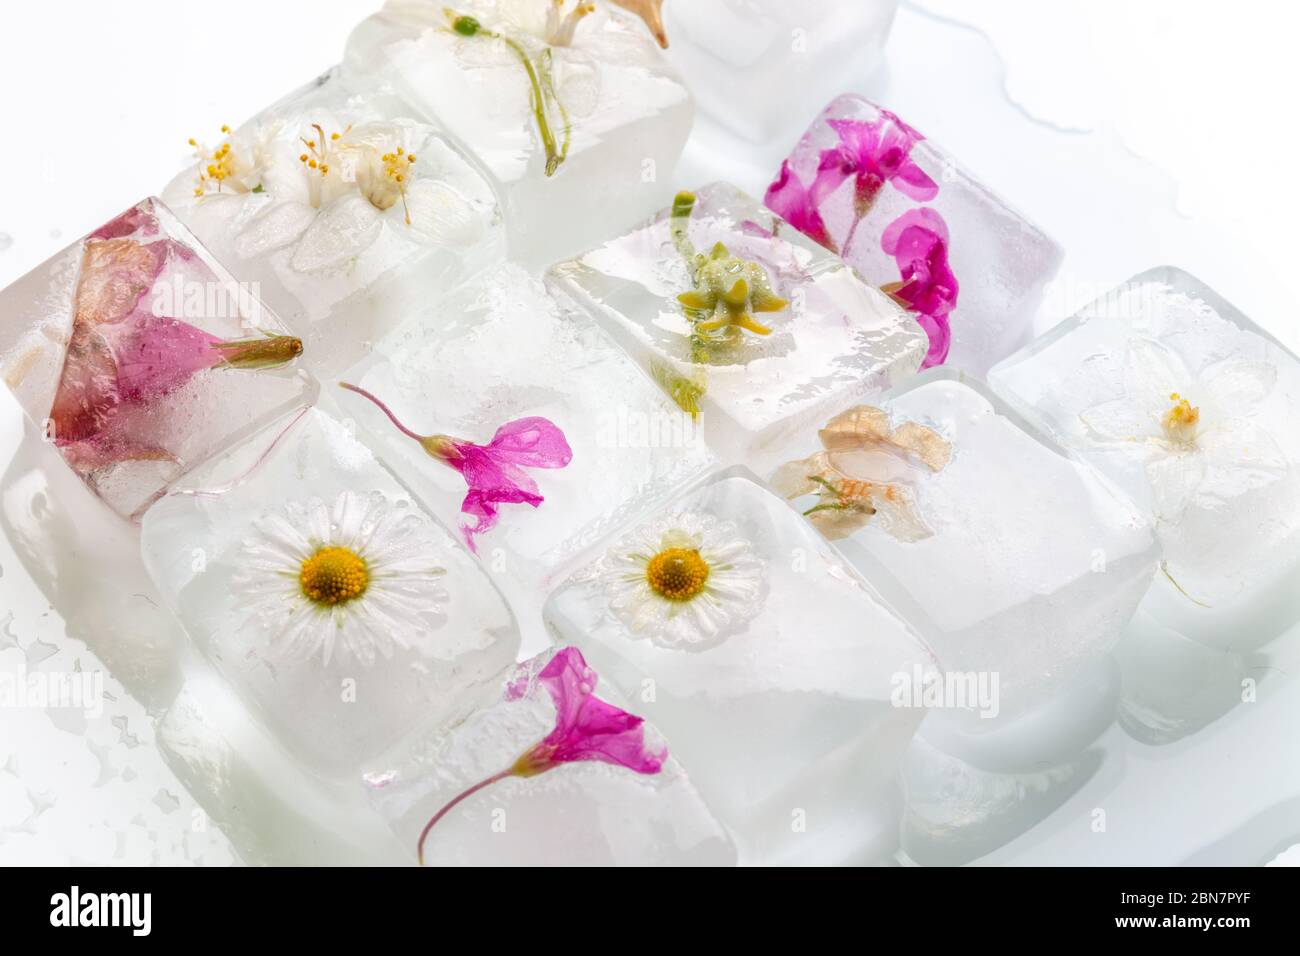 Ein Foto von wilden Frühlingsblumen in transparenten schmelzenden Eiswürfeln von Wasser eingefroren, Studio Makro-Aufnahme Stockfoto